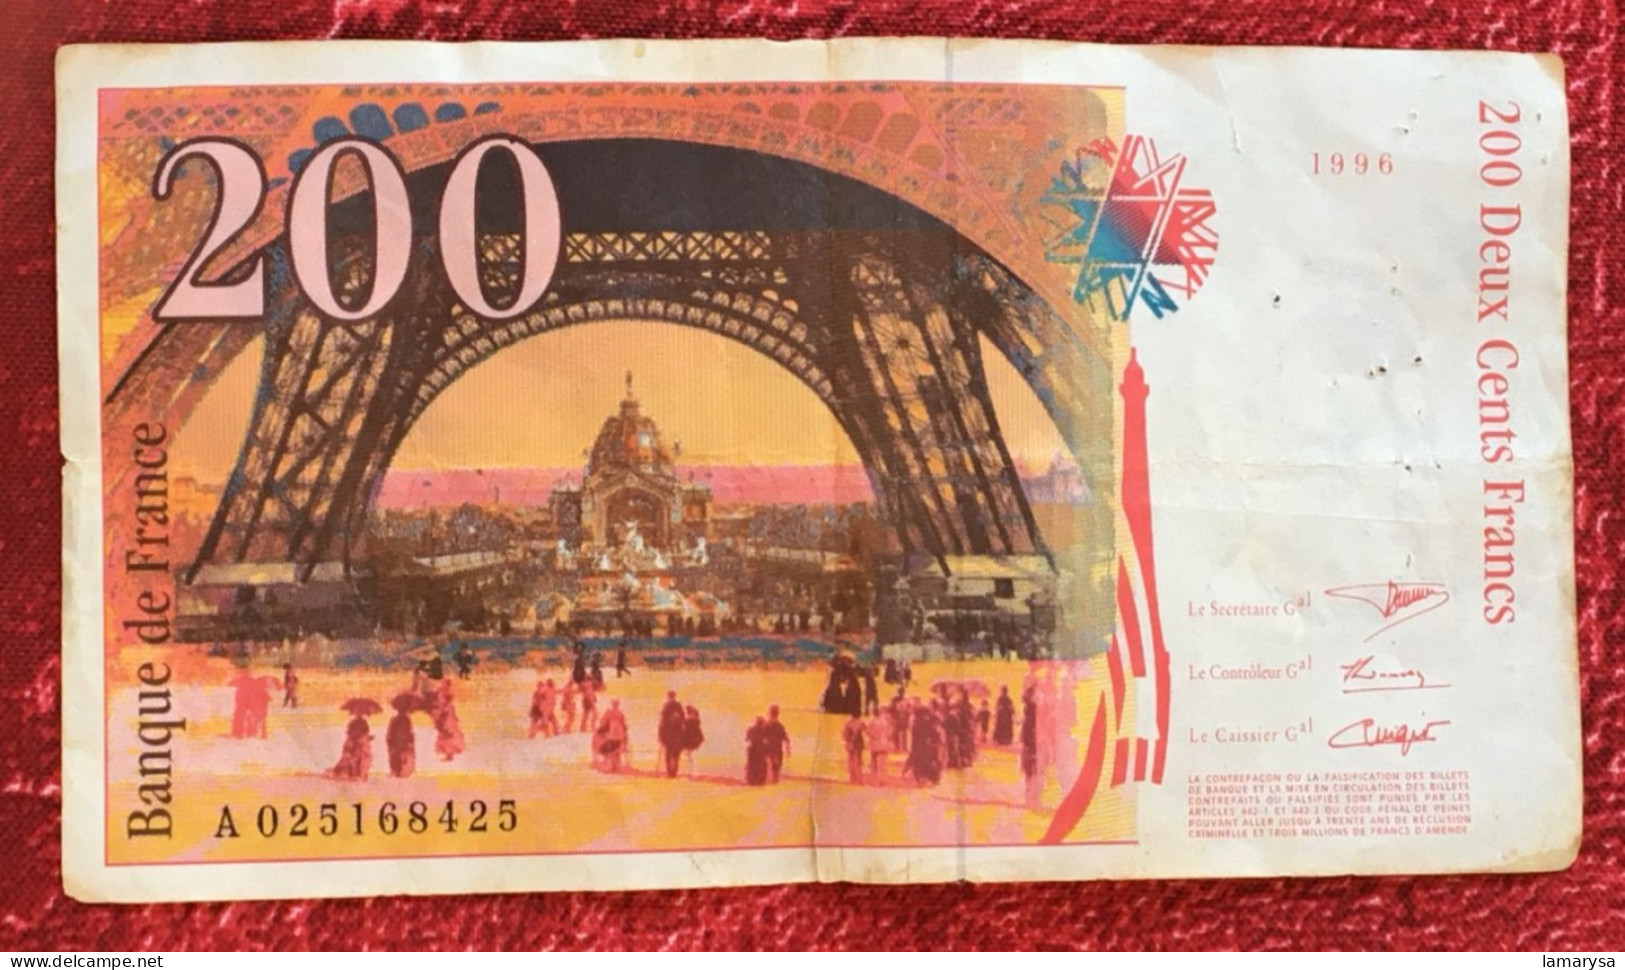 Monnaie & Billet De Banque Bank-Billet De France 1996 Dernière Gamme 200 F 1995-1999 ''Eiffel'' - 200 F 1995-1999 ''Eiffel''